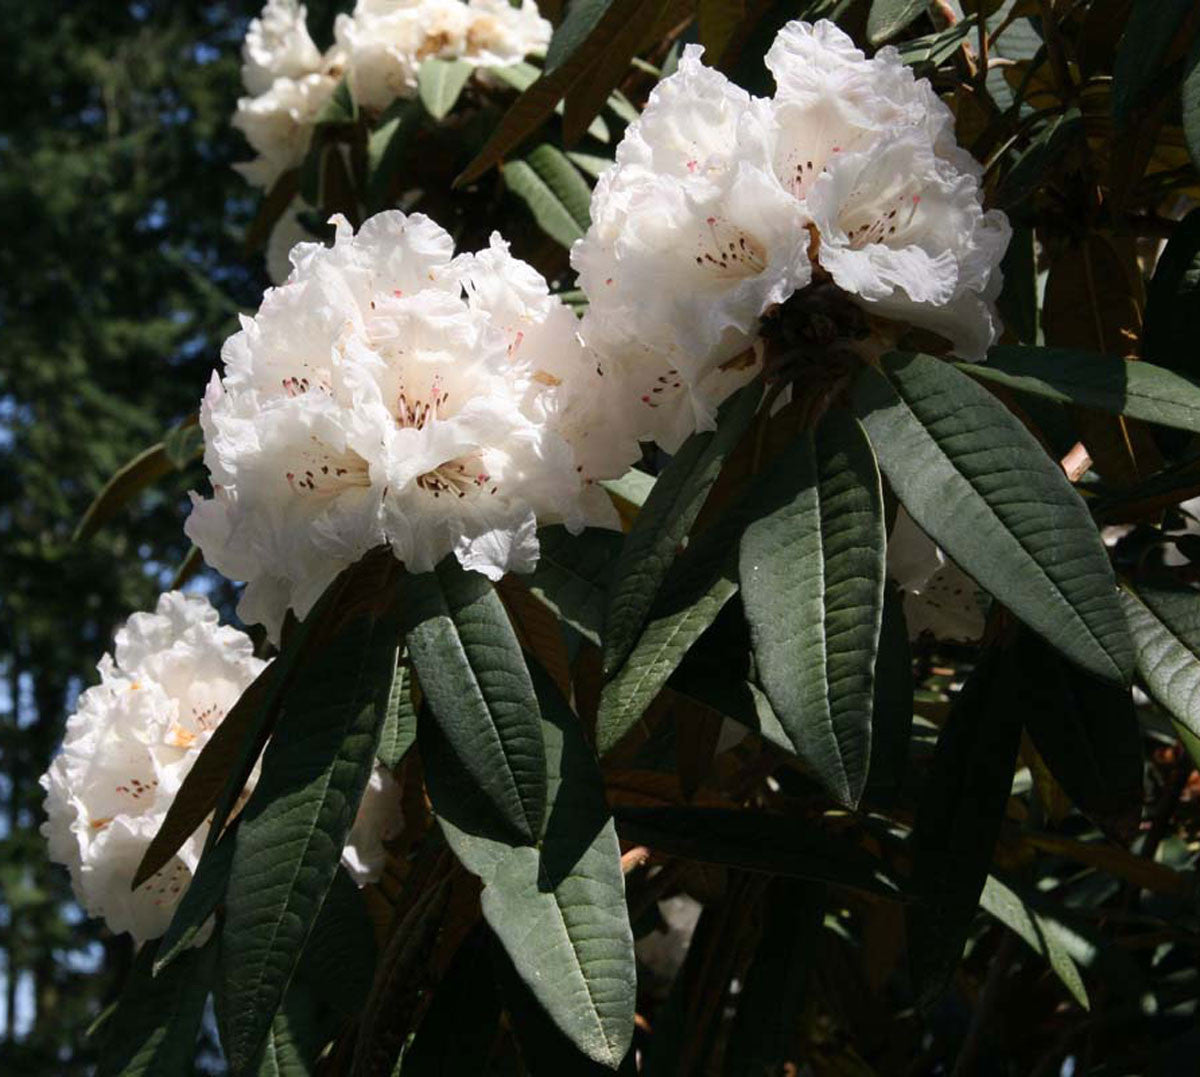 R. arboreum ssp. cinnamomeum